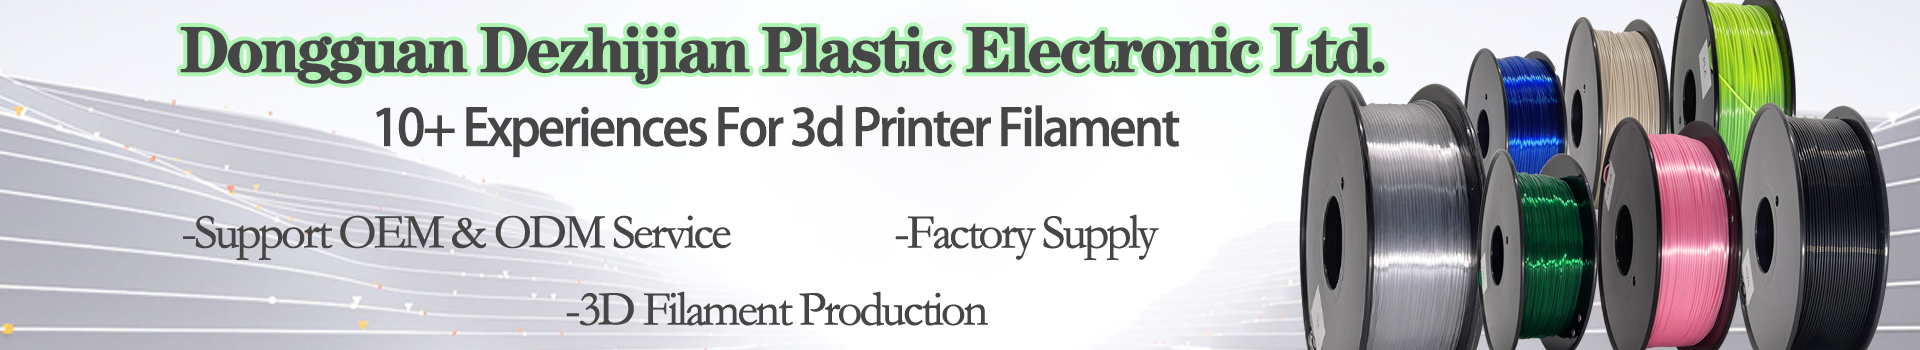 PINRUI 2 Colors In filament Dual Color Silk Filament  For 3d Printer